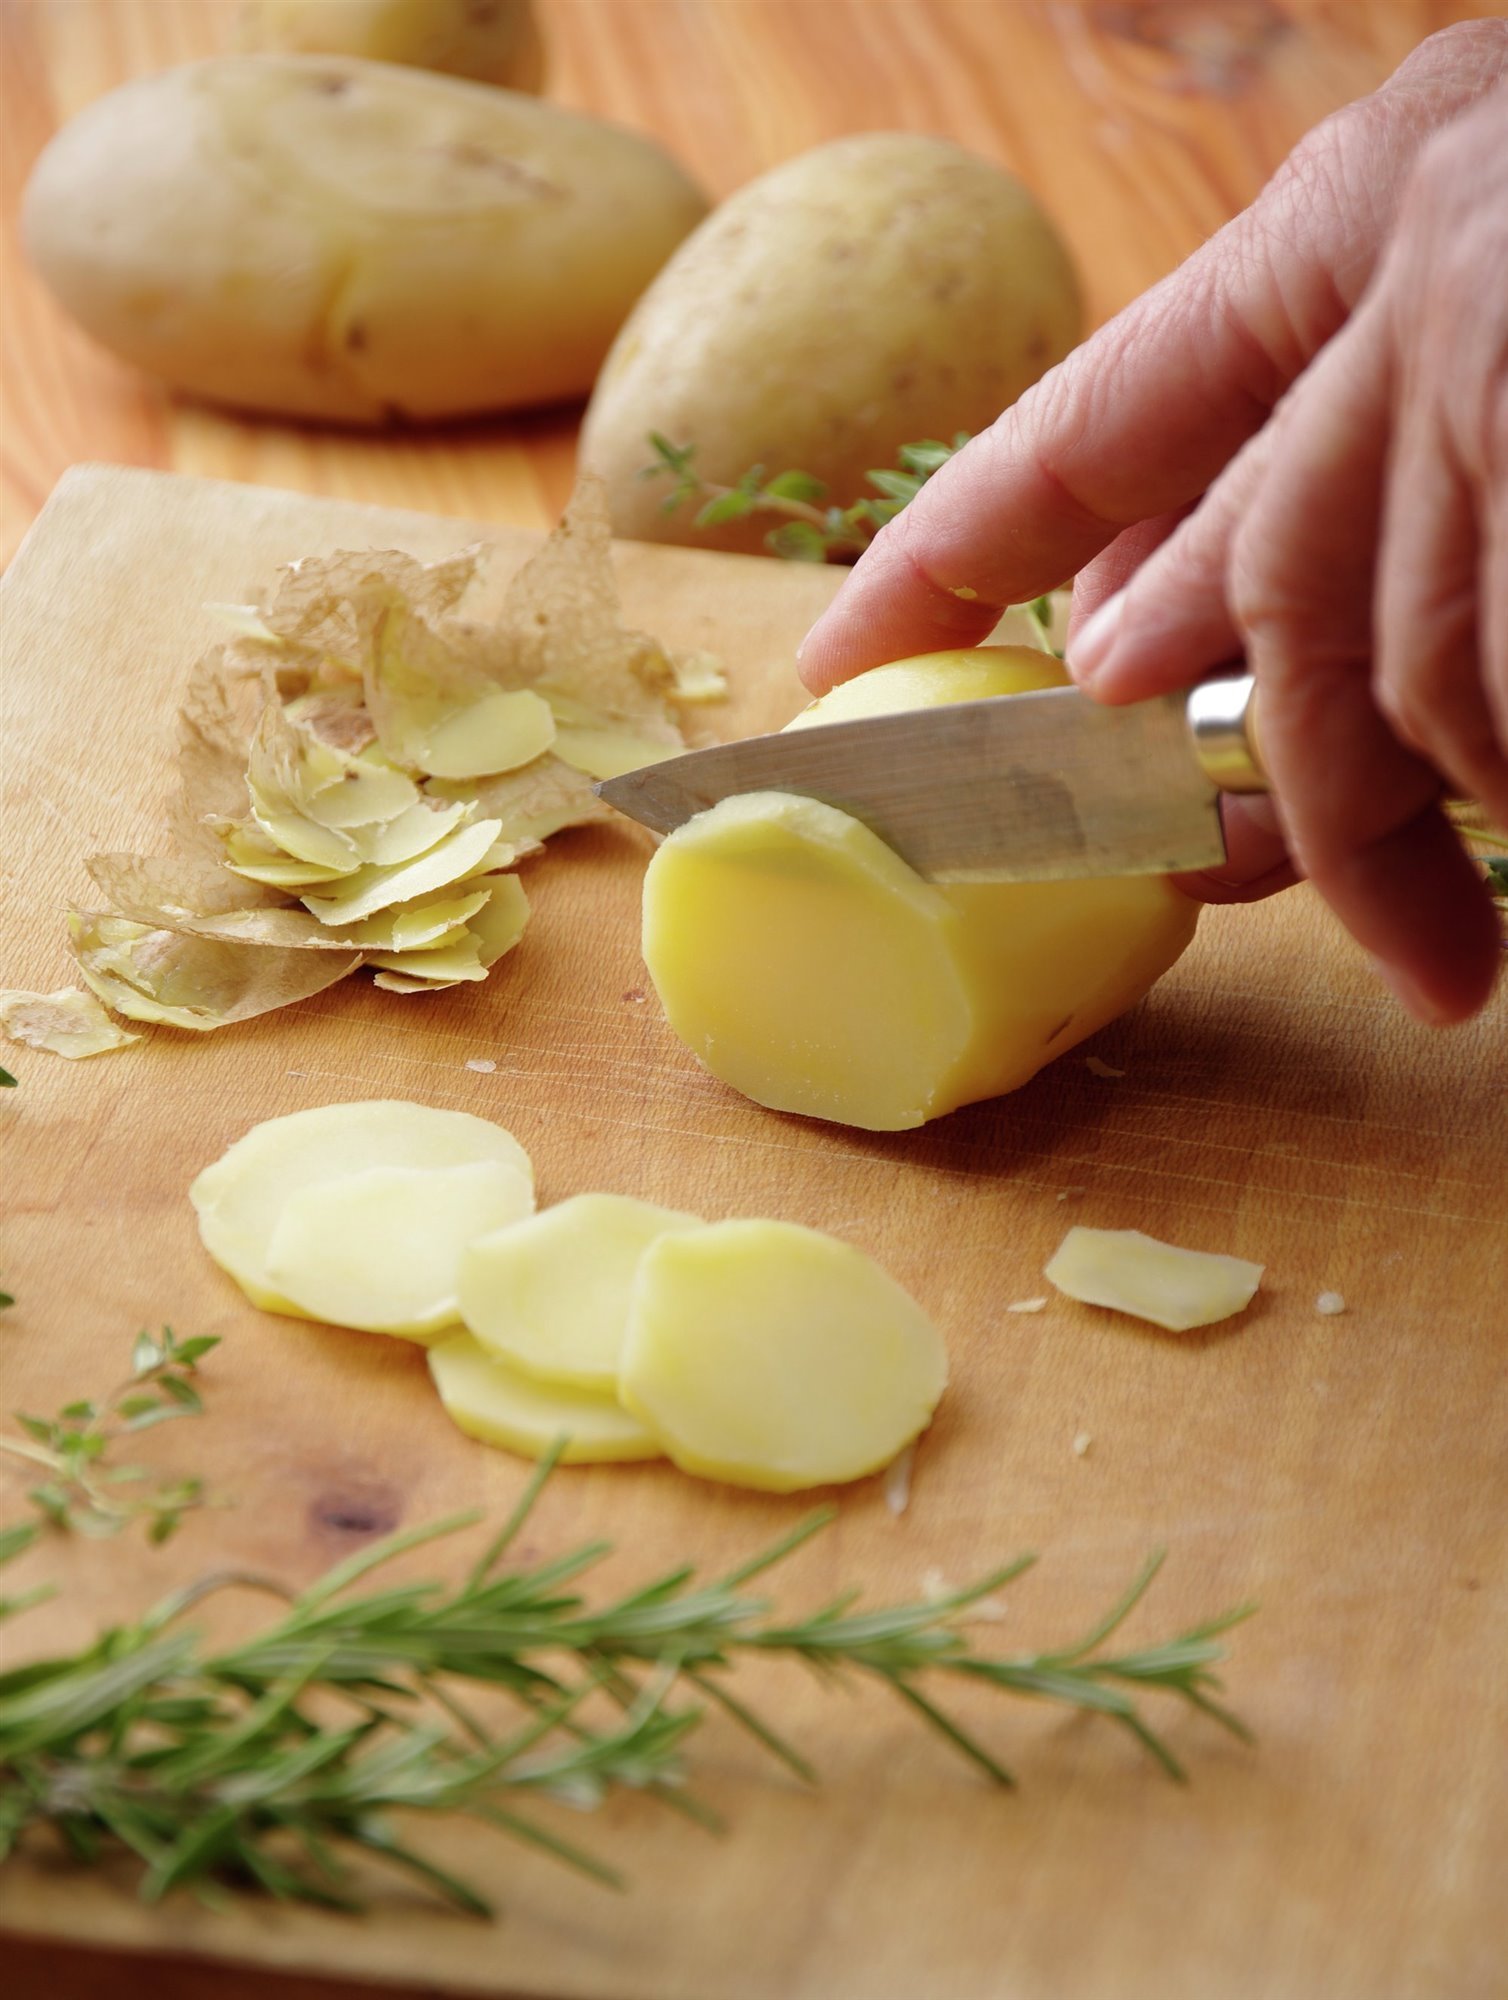 1. Cut the potatoes